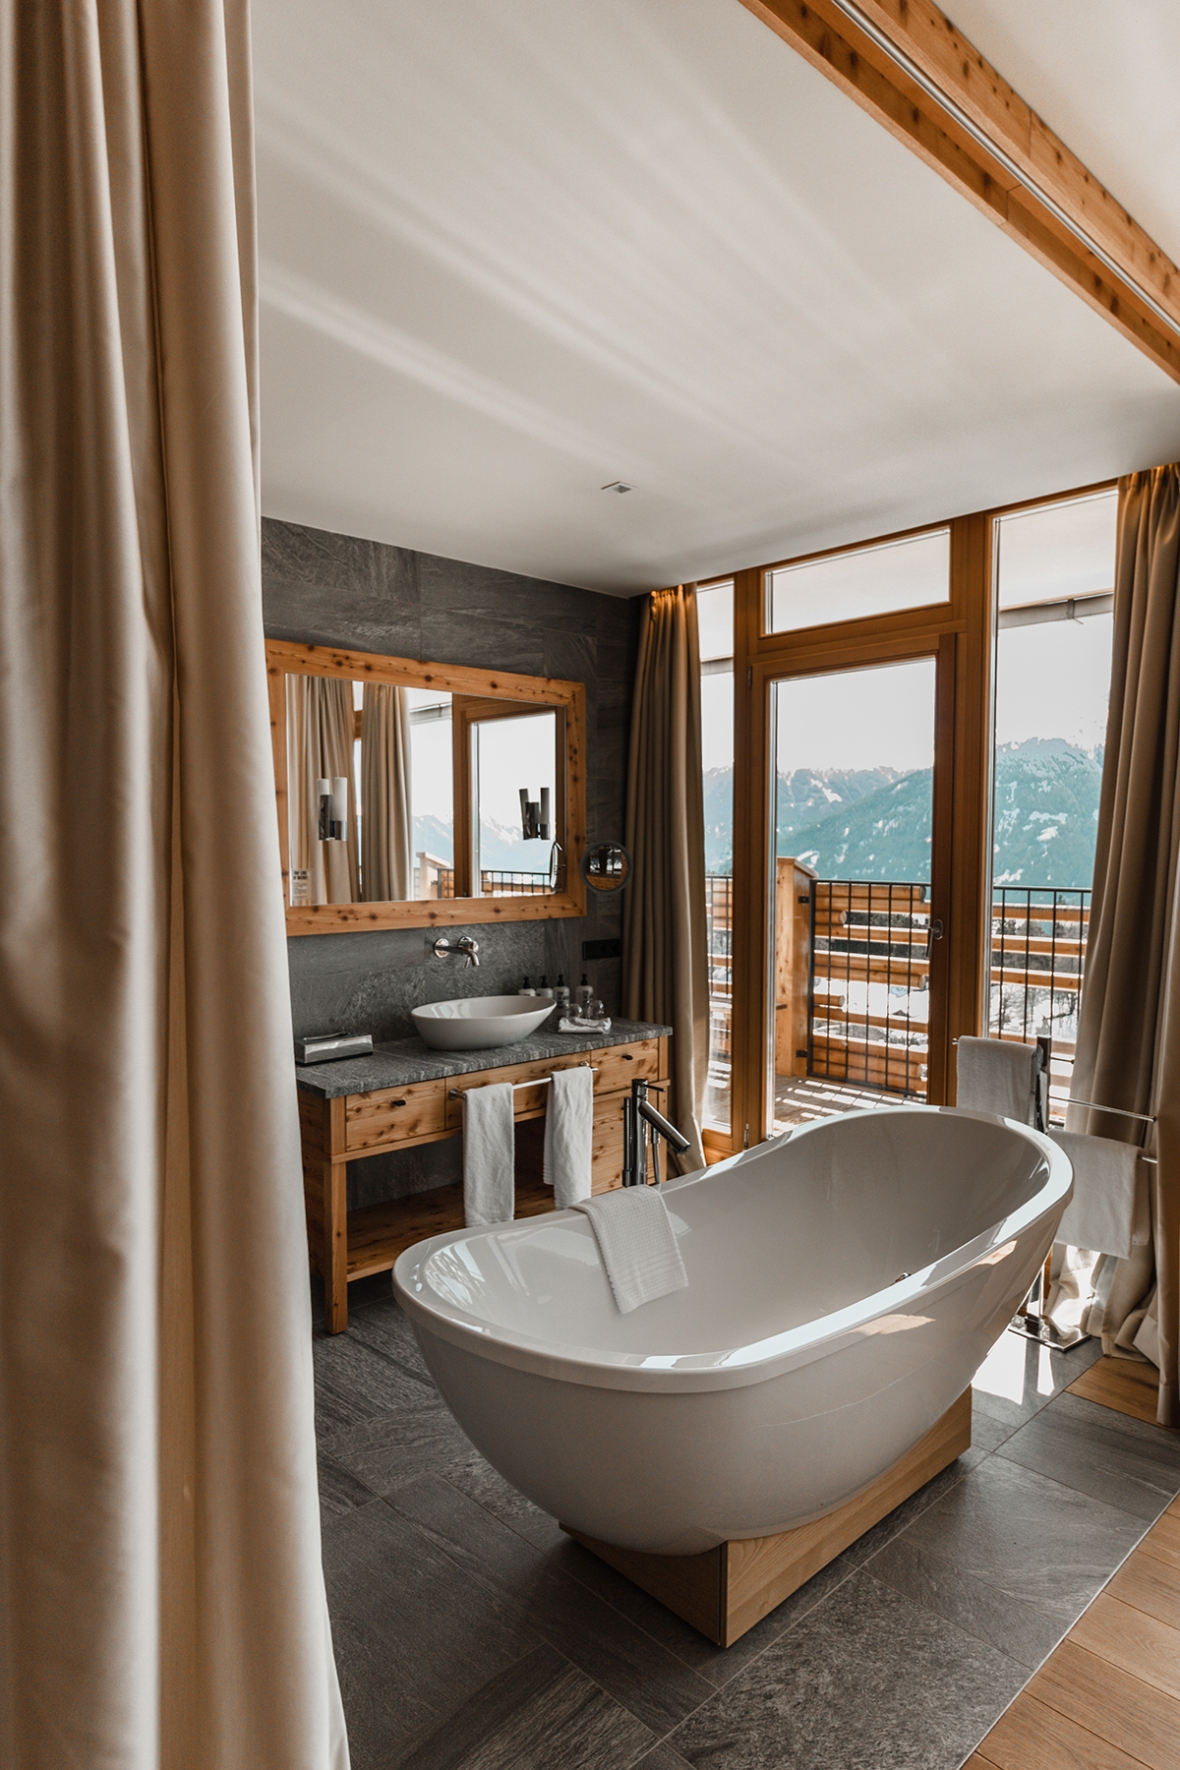 Merel van Poorten Blogger Review Nidum Hotel Austria